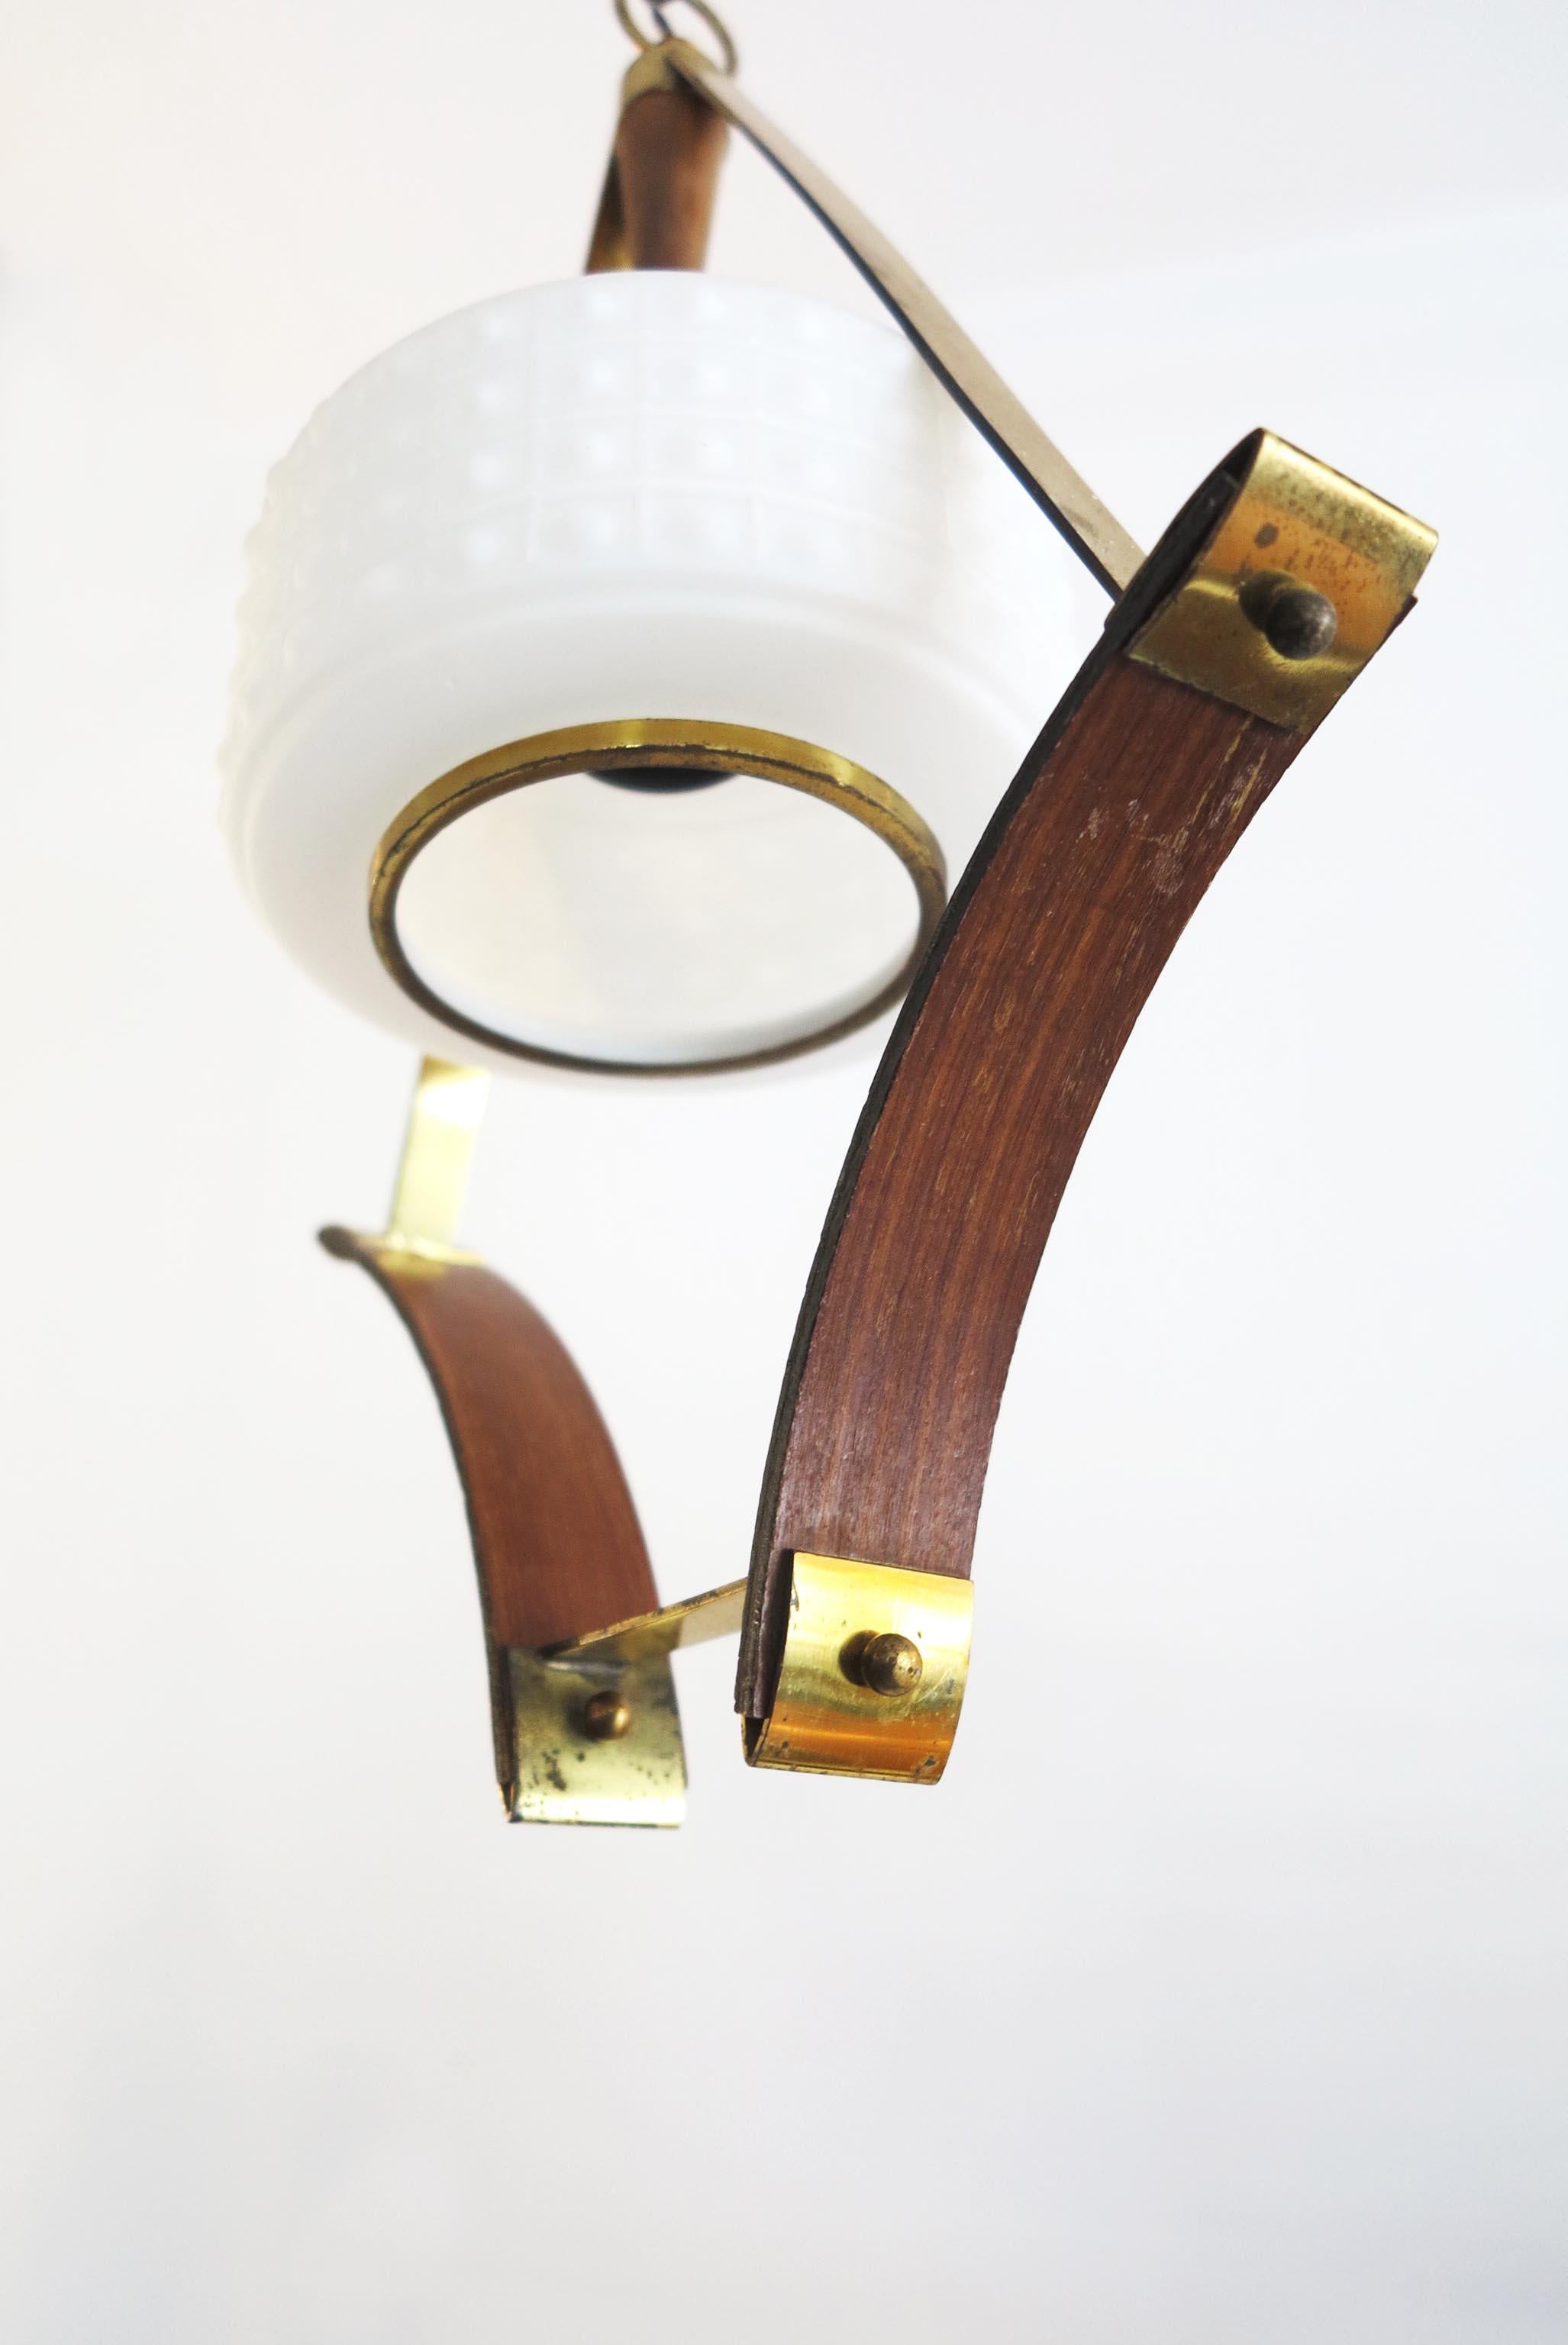 Scandinavian Pendant or Ceiling Lamp in Teak Wood Opaline Glass & Brass, 1950s For Sale 2